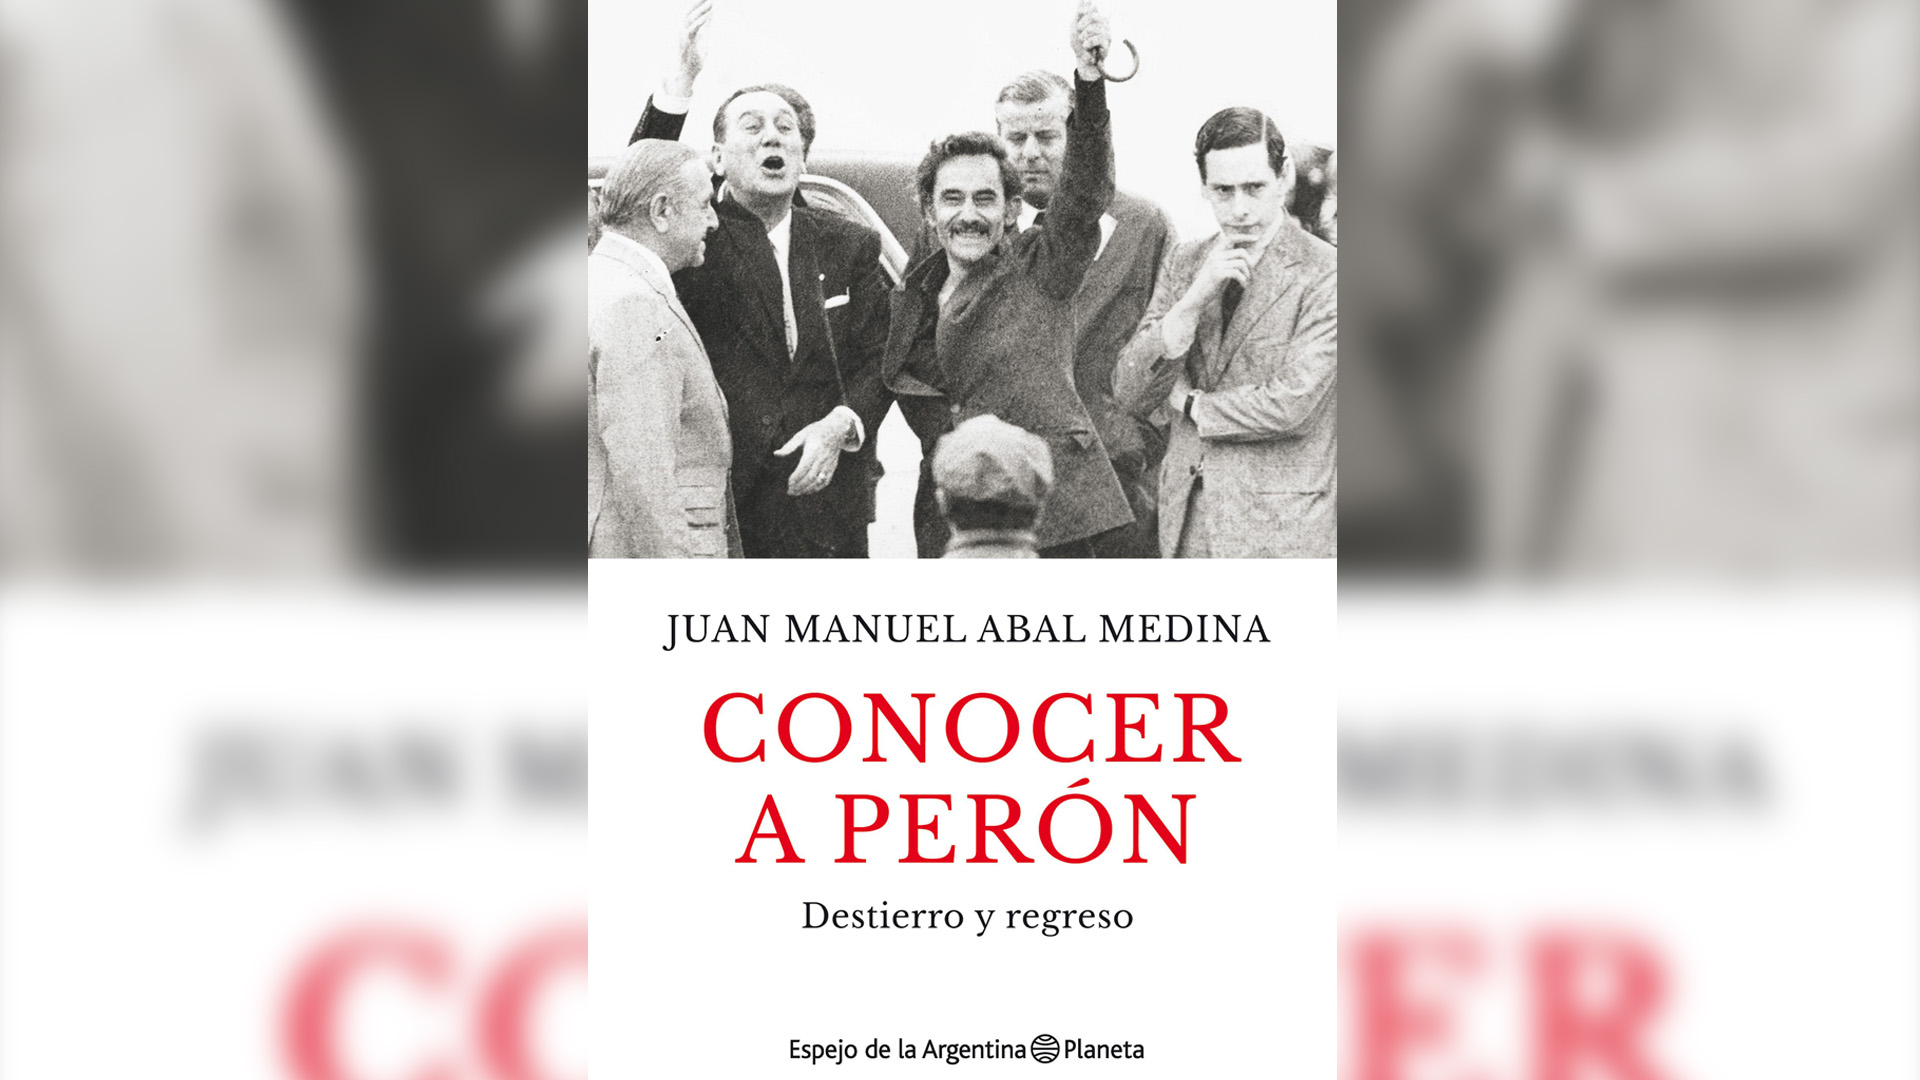 Tapa del libro Conocer a Perón, escrito por Juan Manuel Abal Medina, que es el primero a la derecha al lado de José Ignacio Rucci